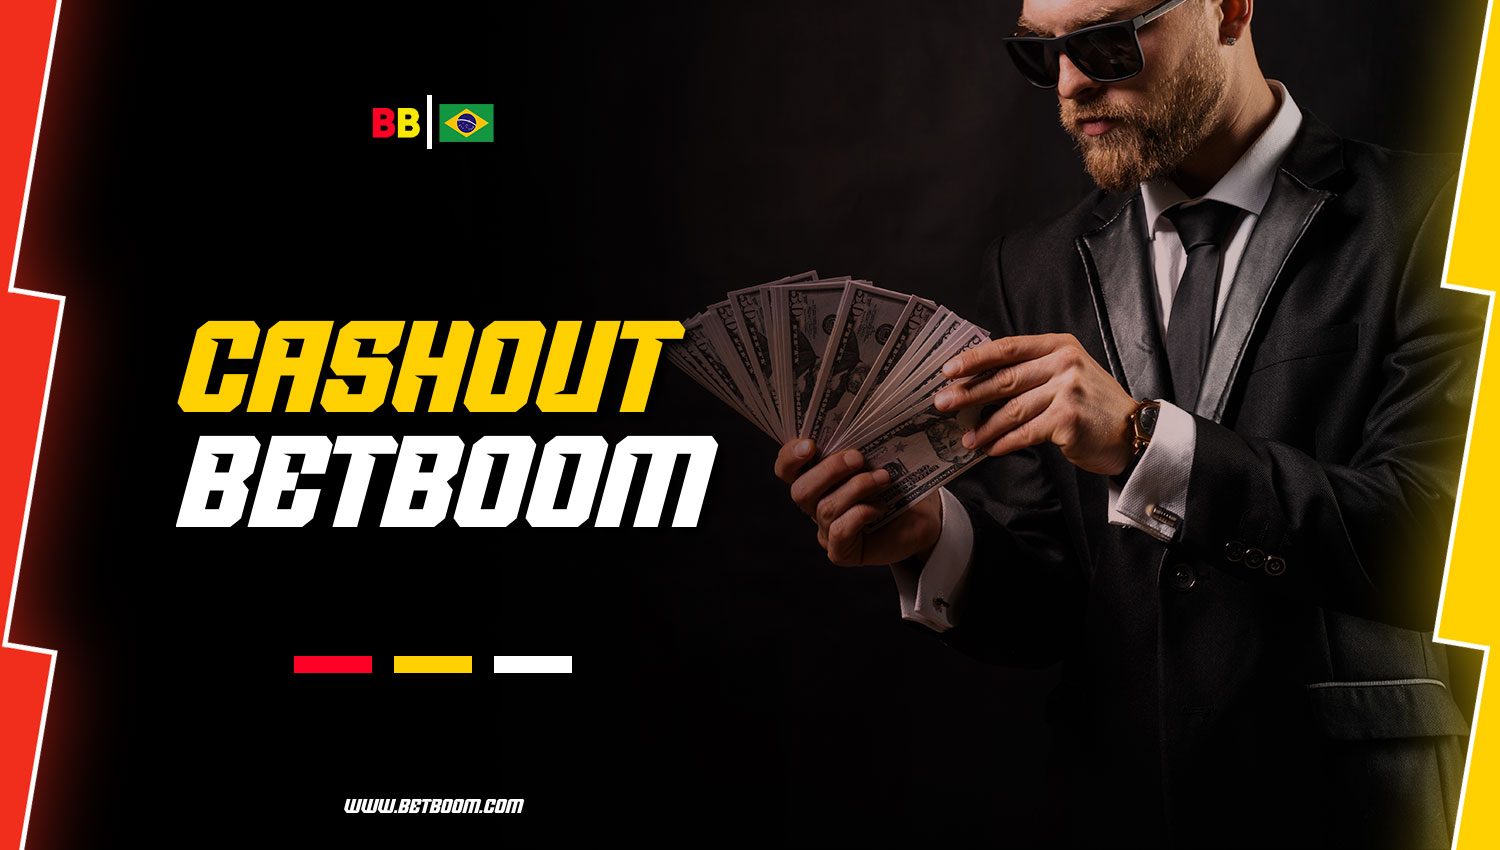 BetBoom, a casa de apostas, oferece o serviço "cashout" para jogadores brasileiros